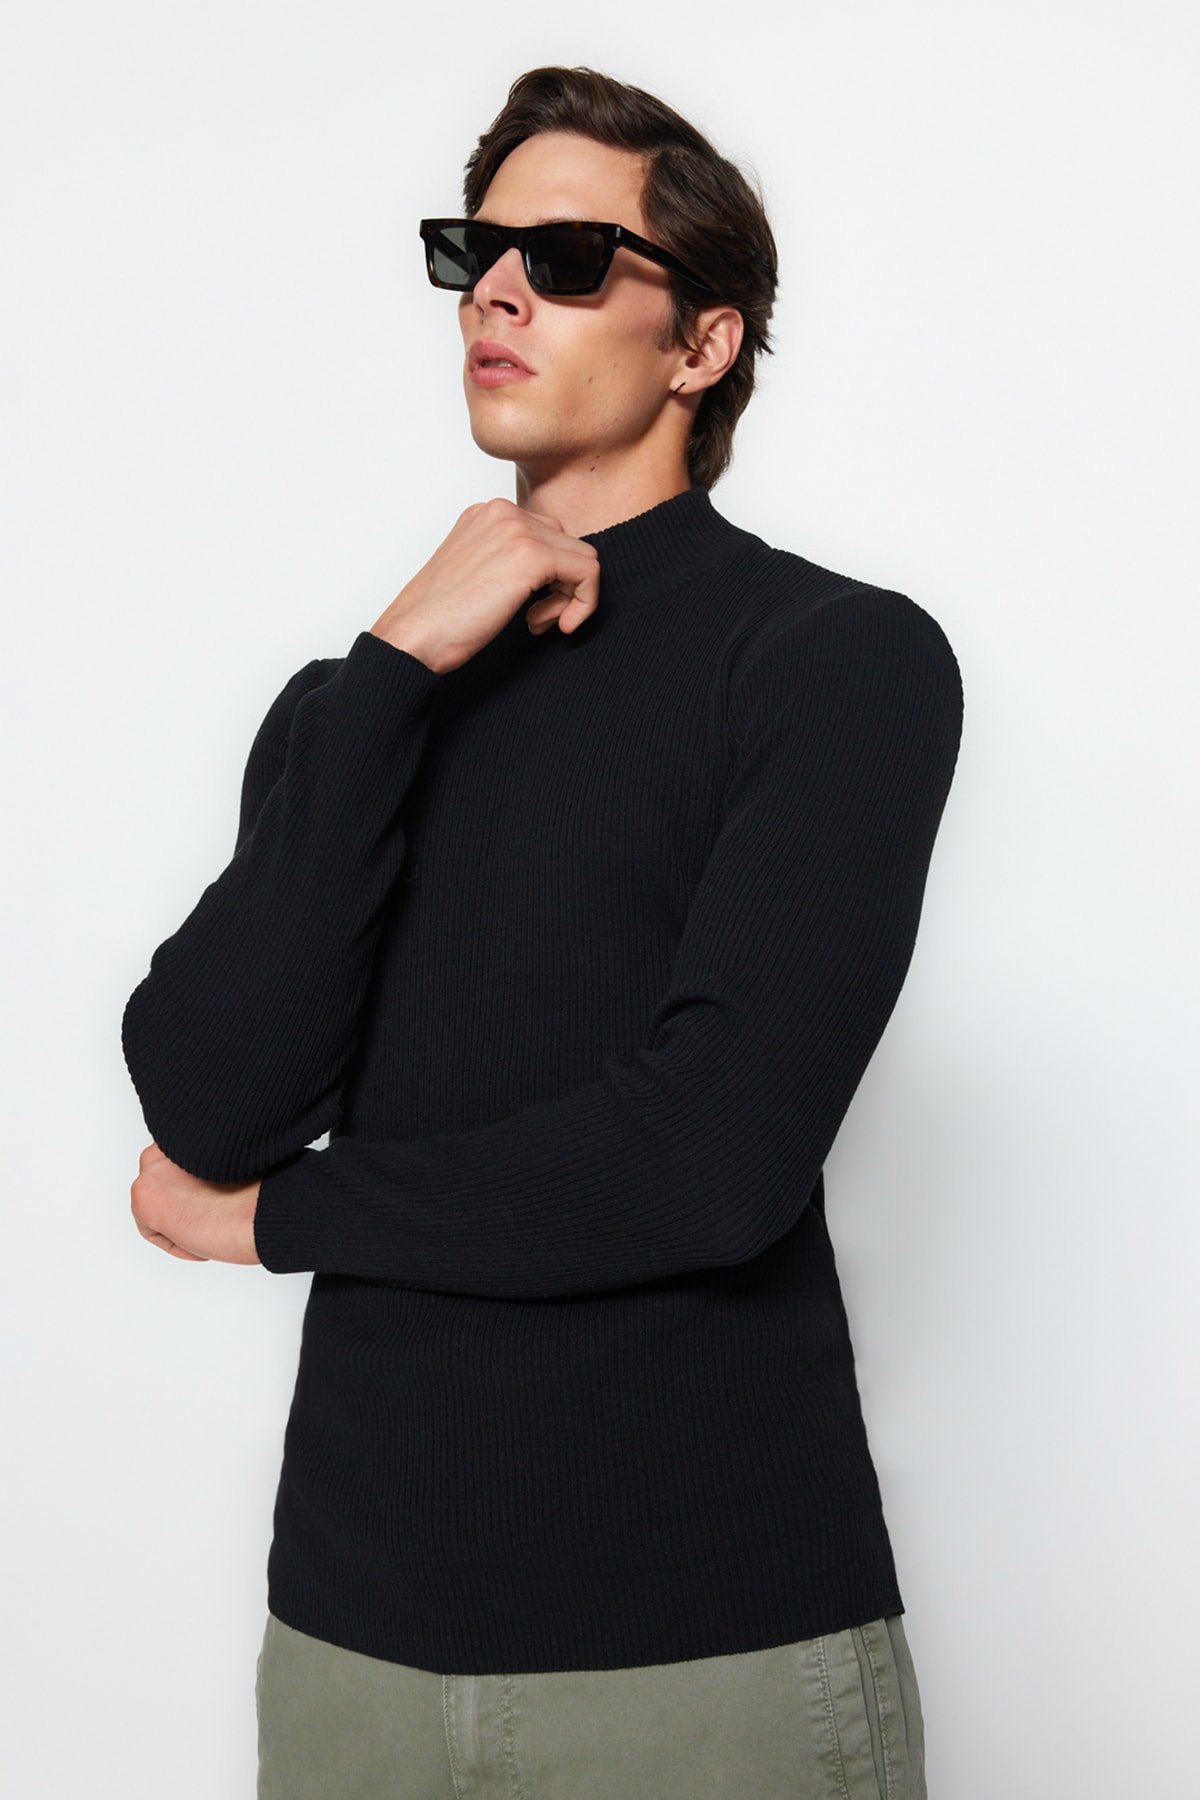 Trendyol Black-Ecru Slim Fit Half Turtleneck Rubber Knit 2 Pack Knitwear Sweater